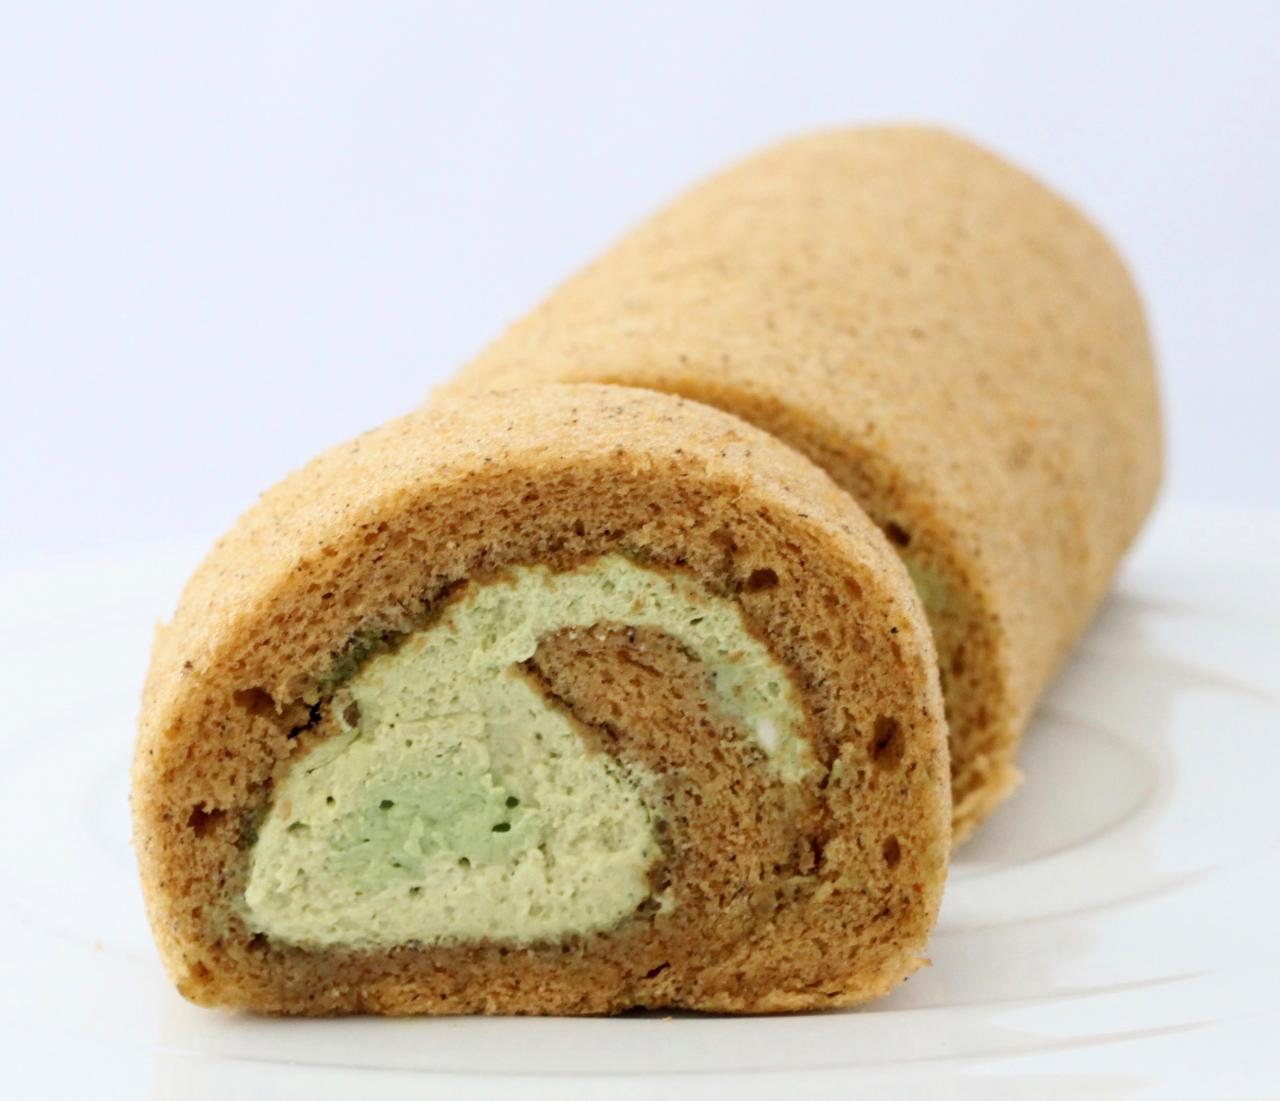 “羽衣甘蓝蔬菜卷蛋糕”。奶油中拌入了羽衣甘蓝和绿茶之一的抹茶做成的卷蛋糕（Patisserie Potager）